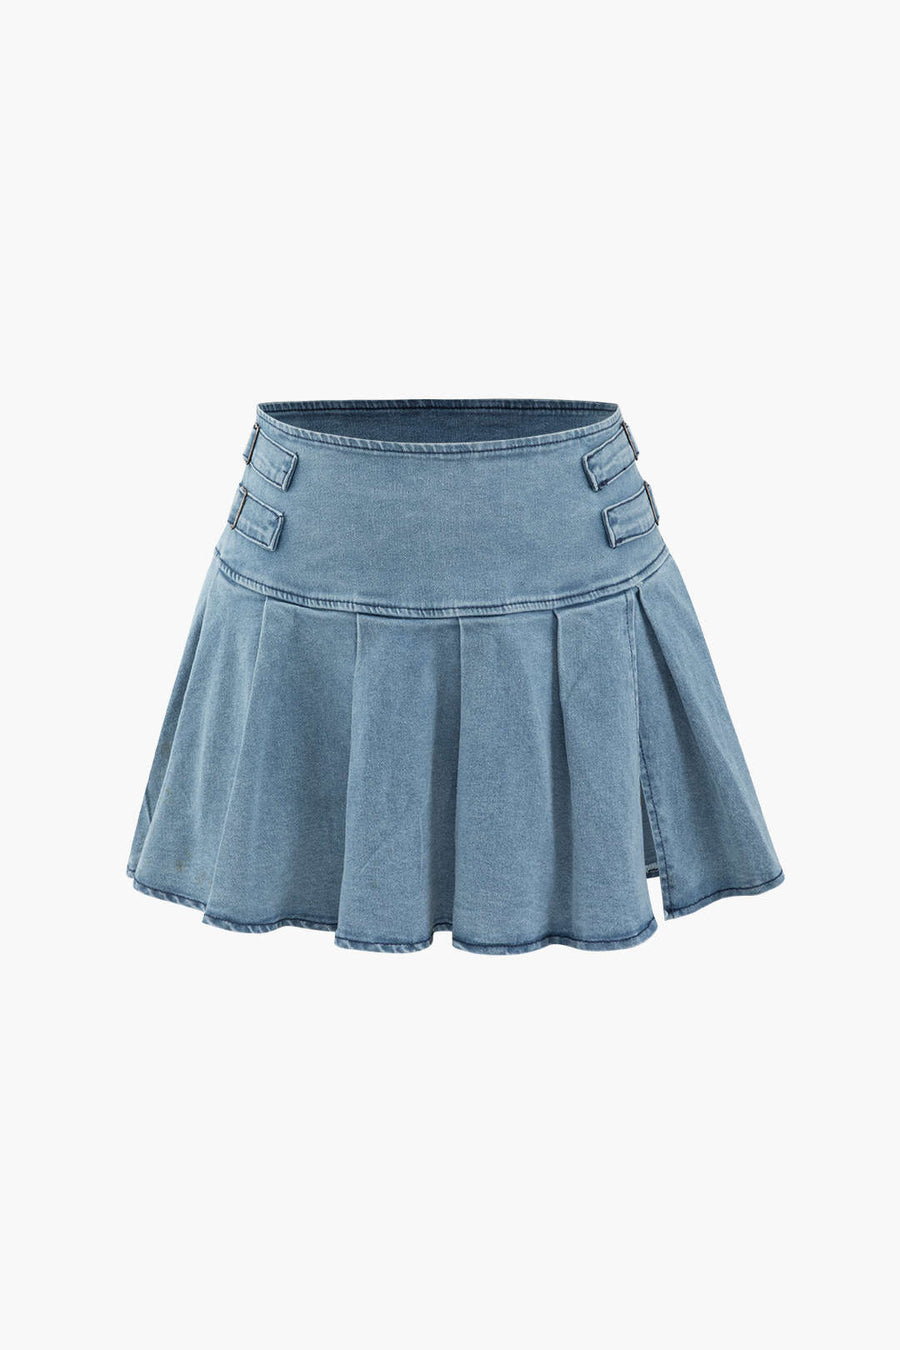 A&A Denim Strapless Skirt Two Piece Set